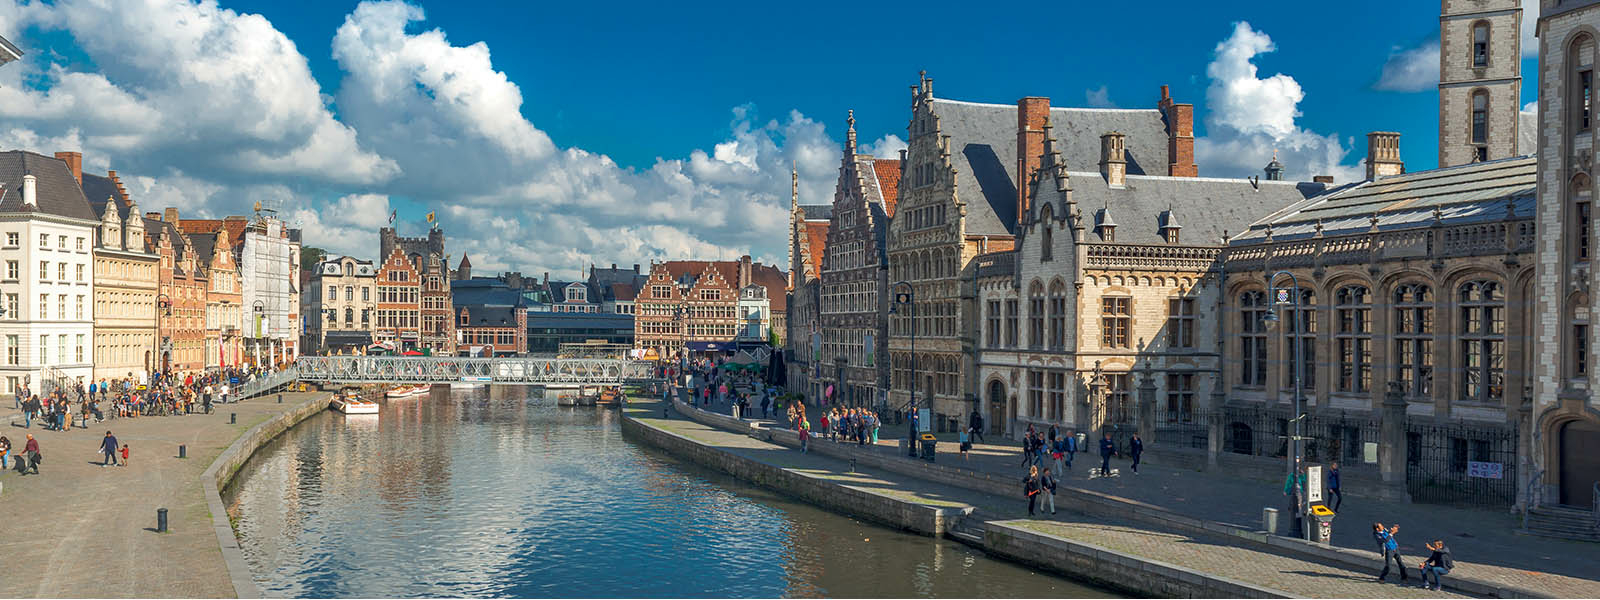 Gent şehri seyahat rehberi: Nerelere gidilir, ne yenir, nasıl gidilir? - Resim : 3